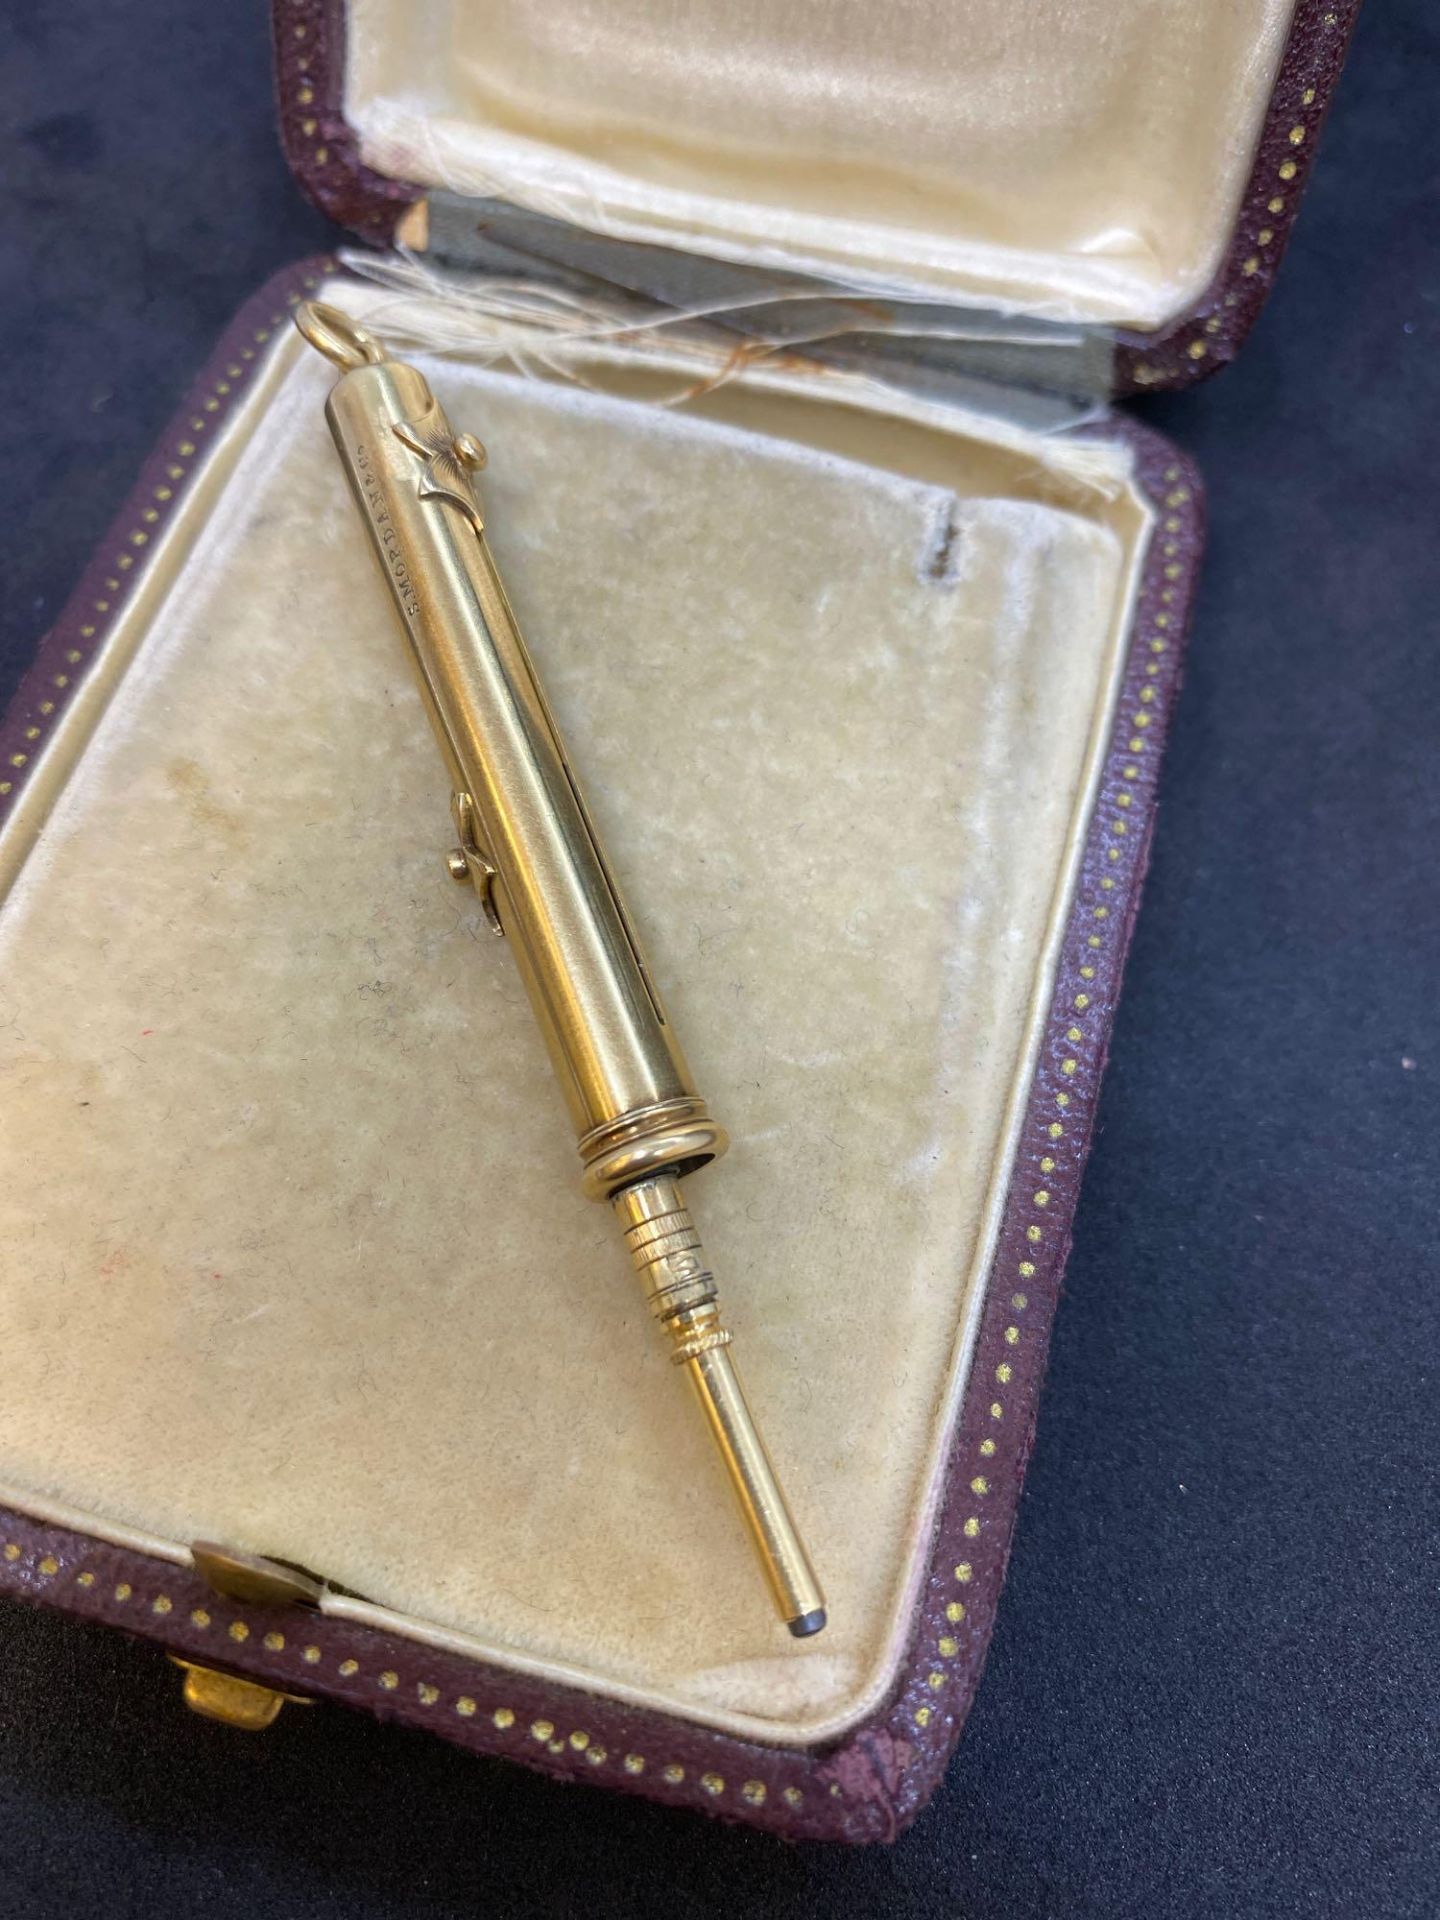 Rare Duo Mordan & Co Propelling Pencil & Fountain Pen - 9k Gold 12.5g